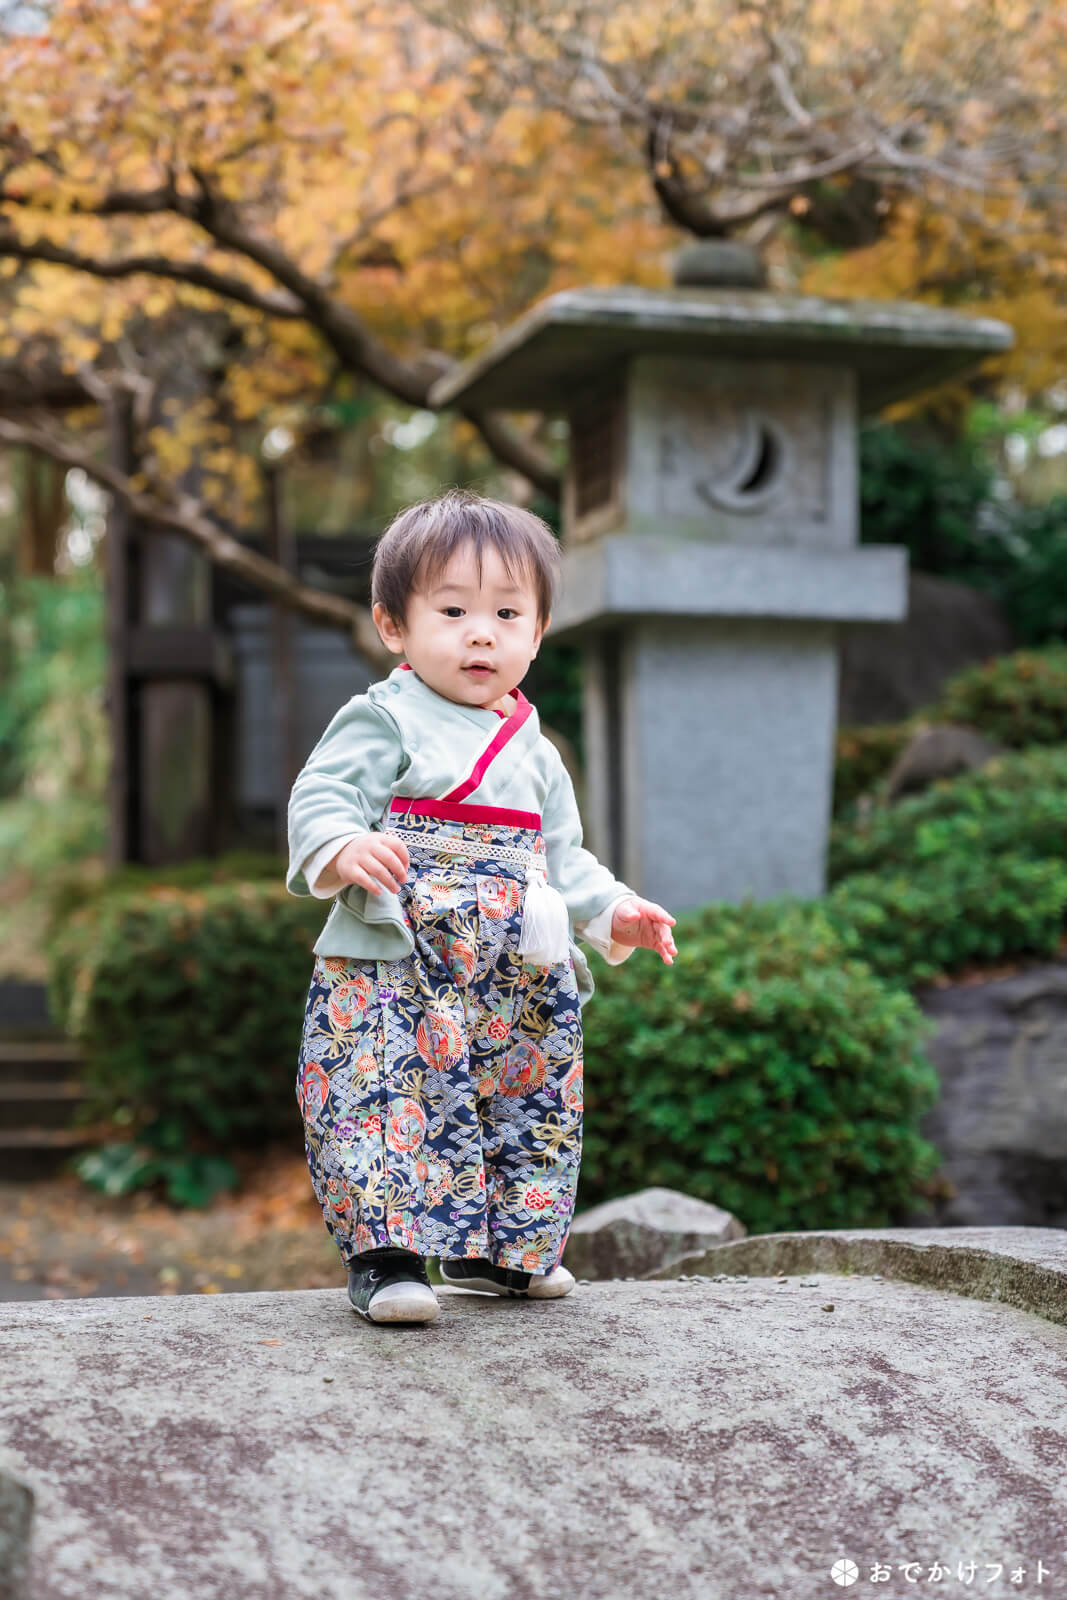 飯盛神社で1歳誕生日の餅ふみと七五三の出張撮影